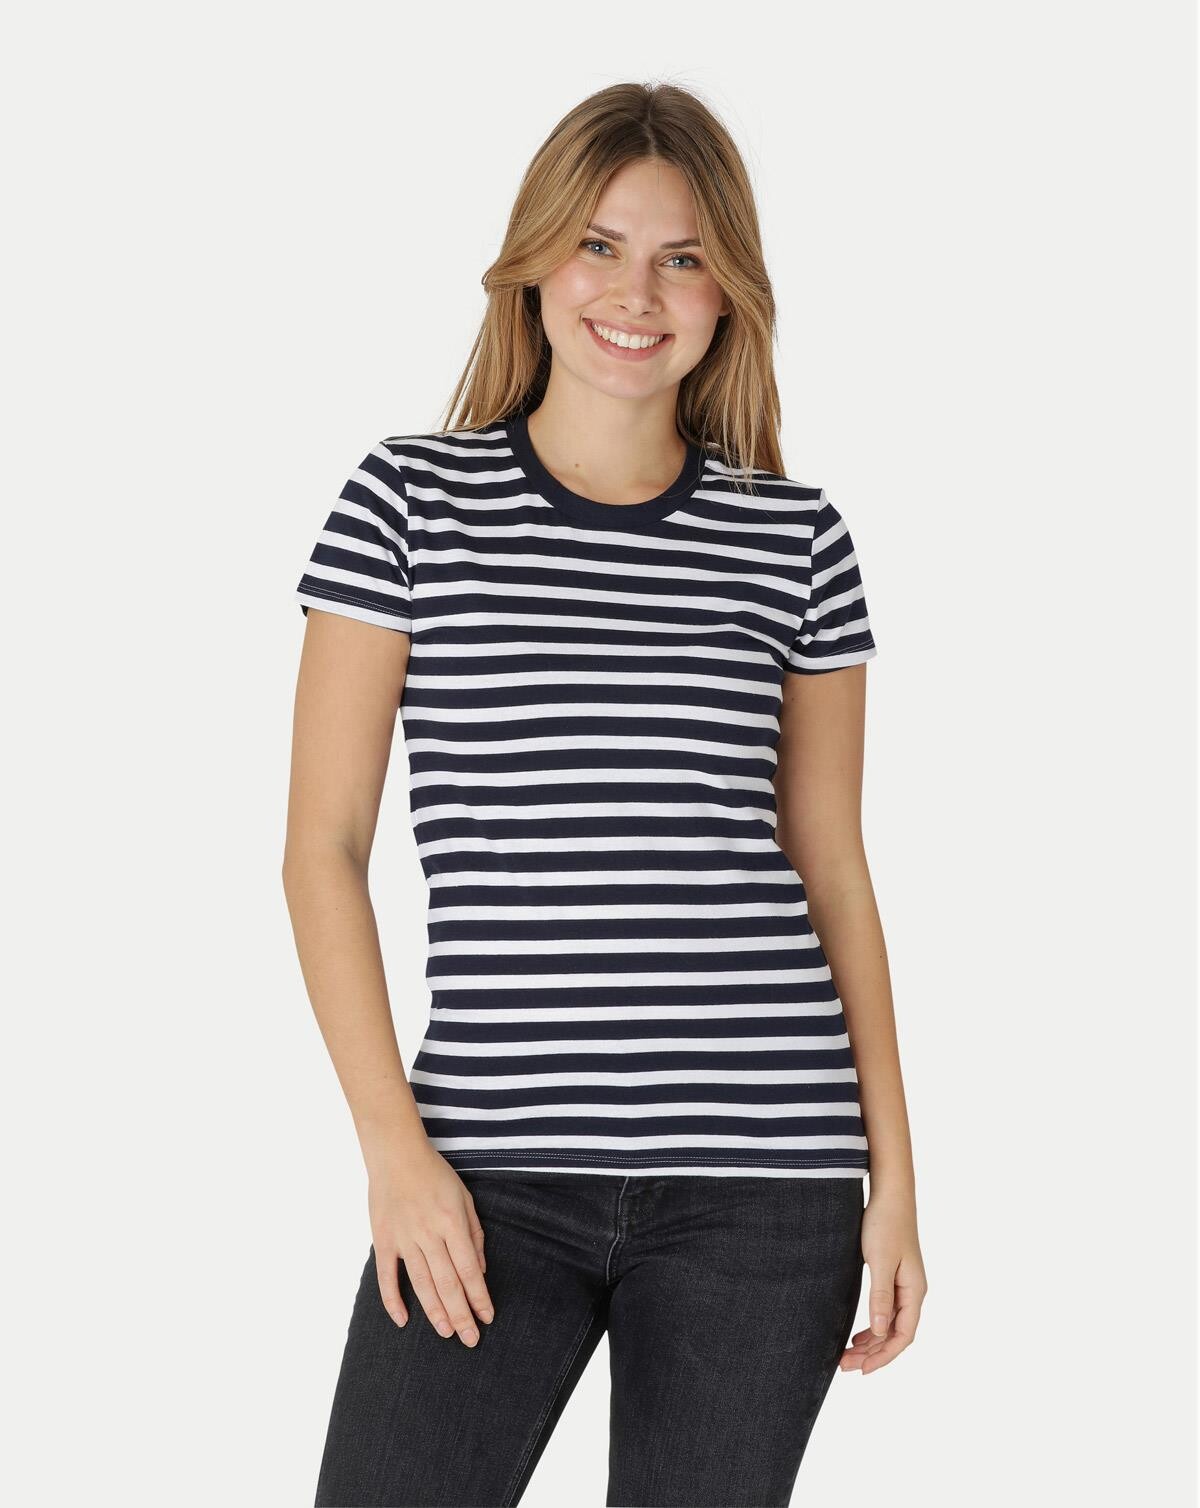 Billede af Neutral Organic - Ladies Fitted T-shirt (Blå / Hvid stribet, XL)